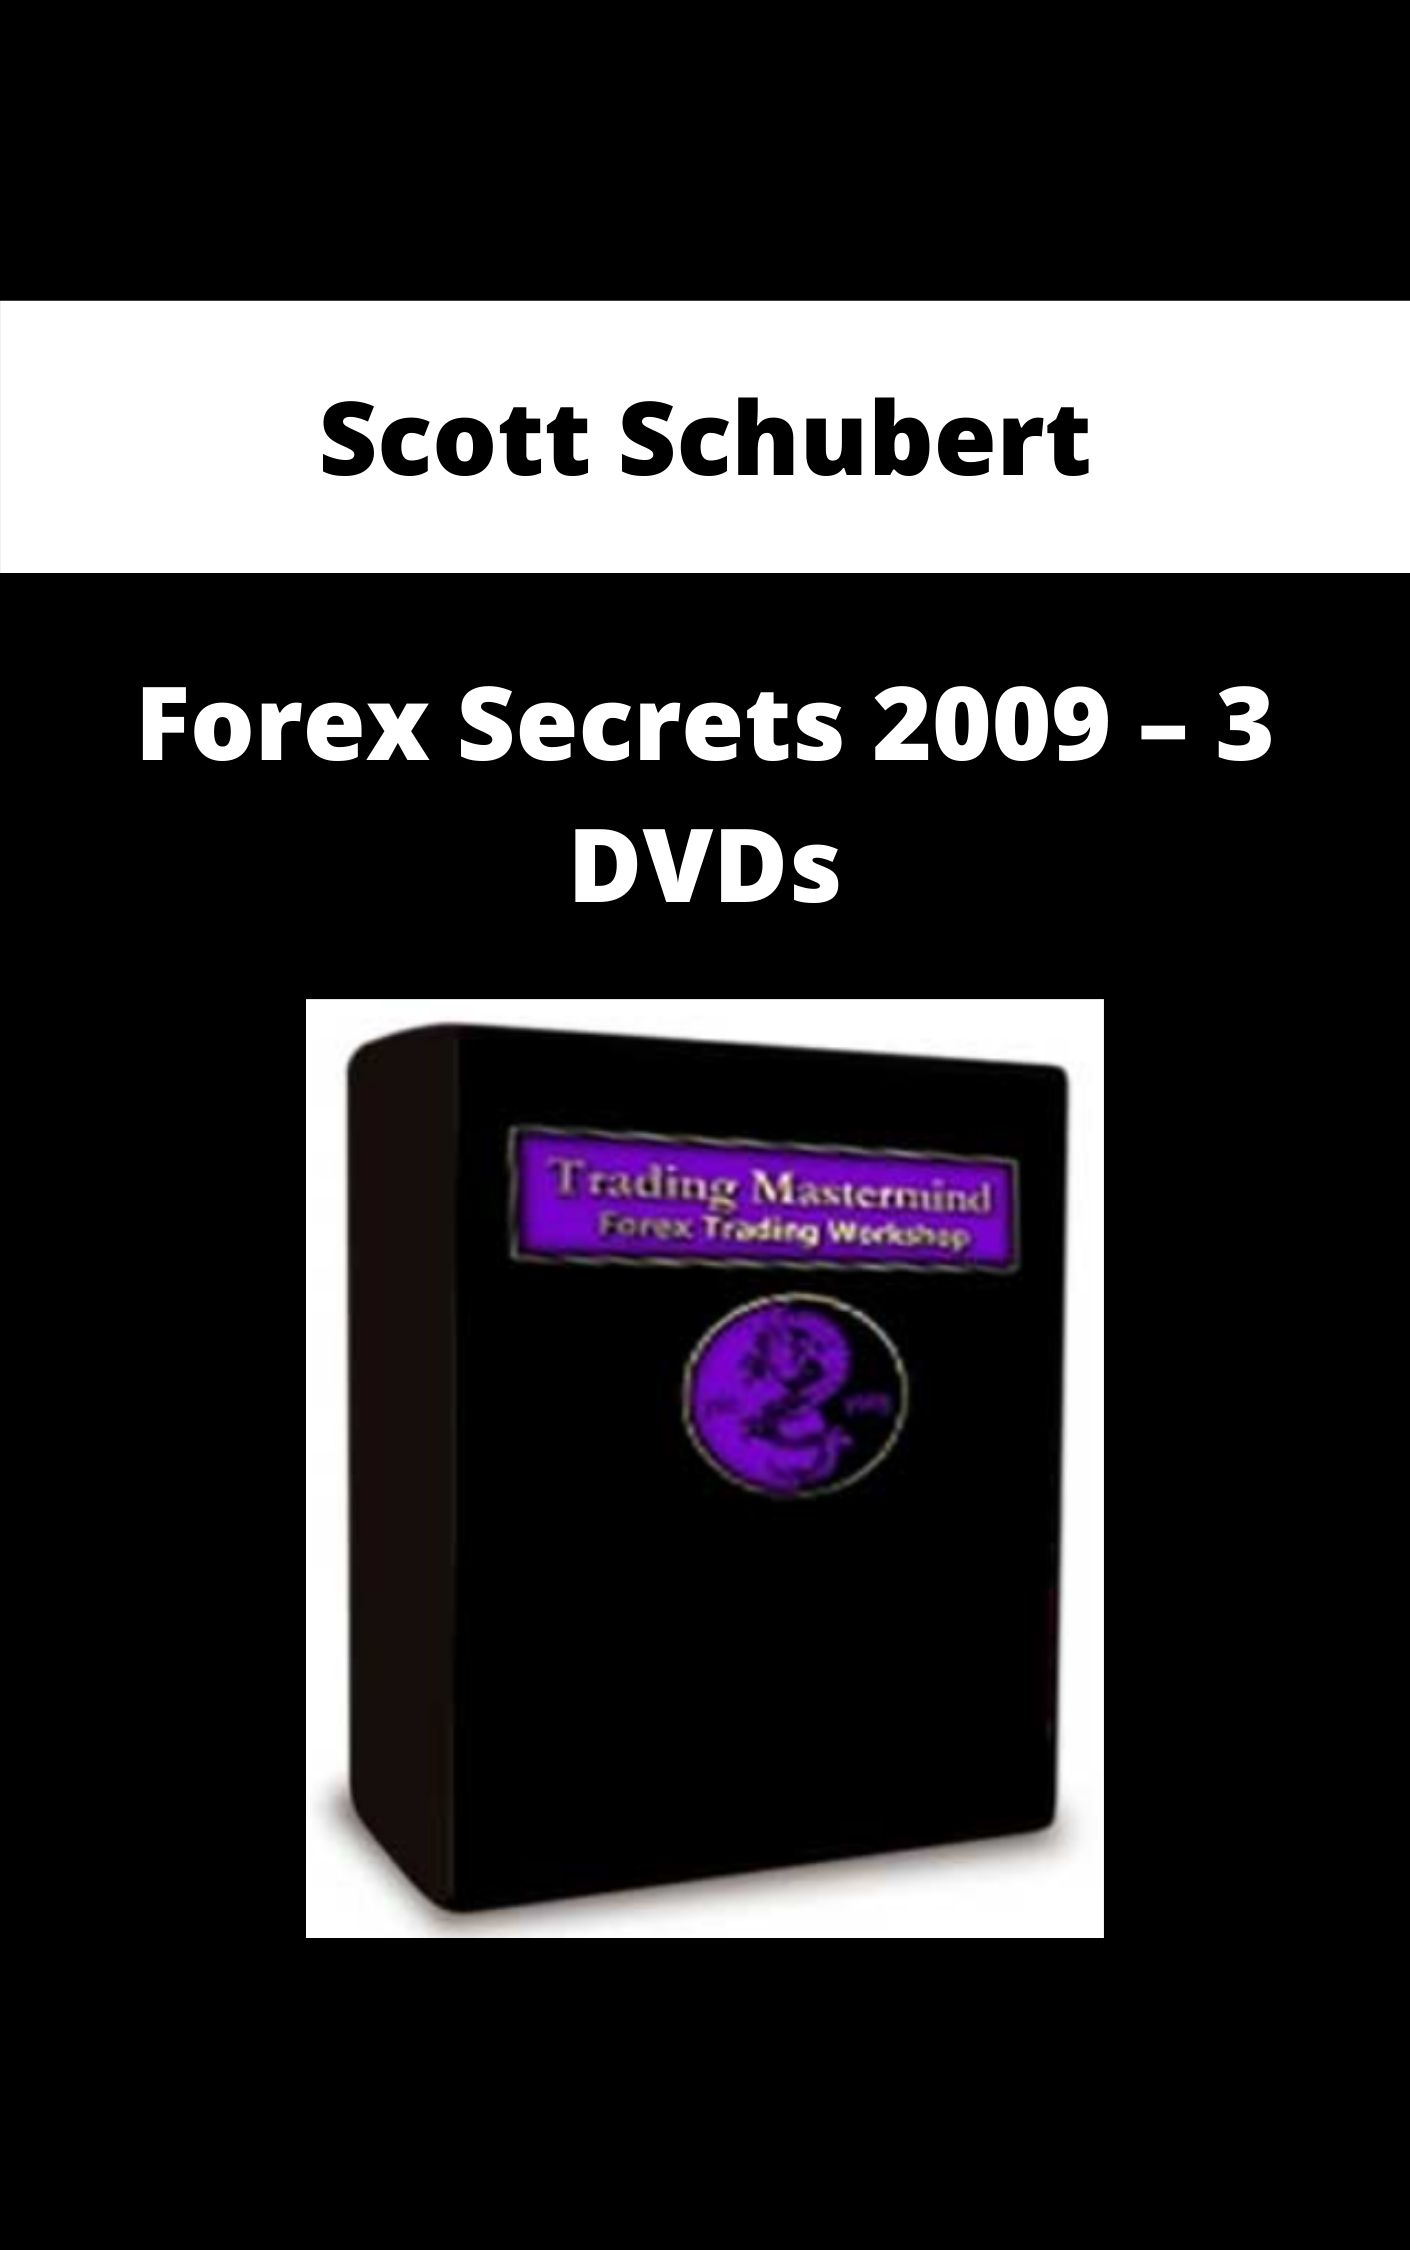 Scott Schubert – Forex Secrets 2009 – 3 DVDs